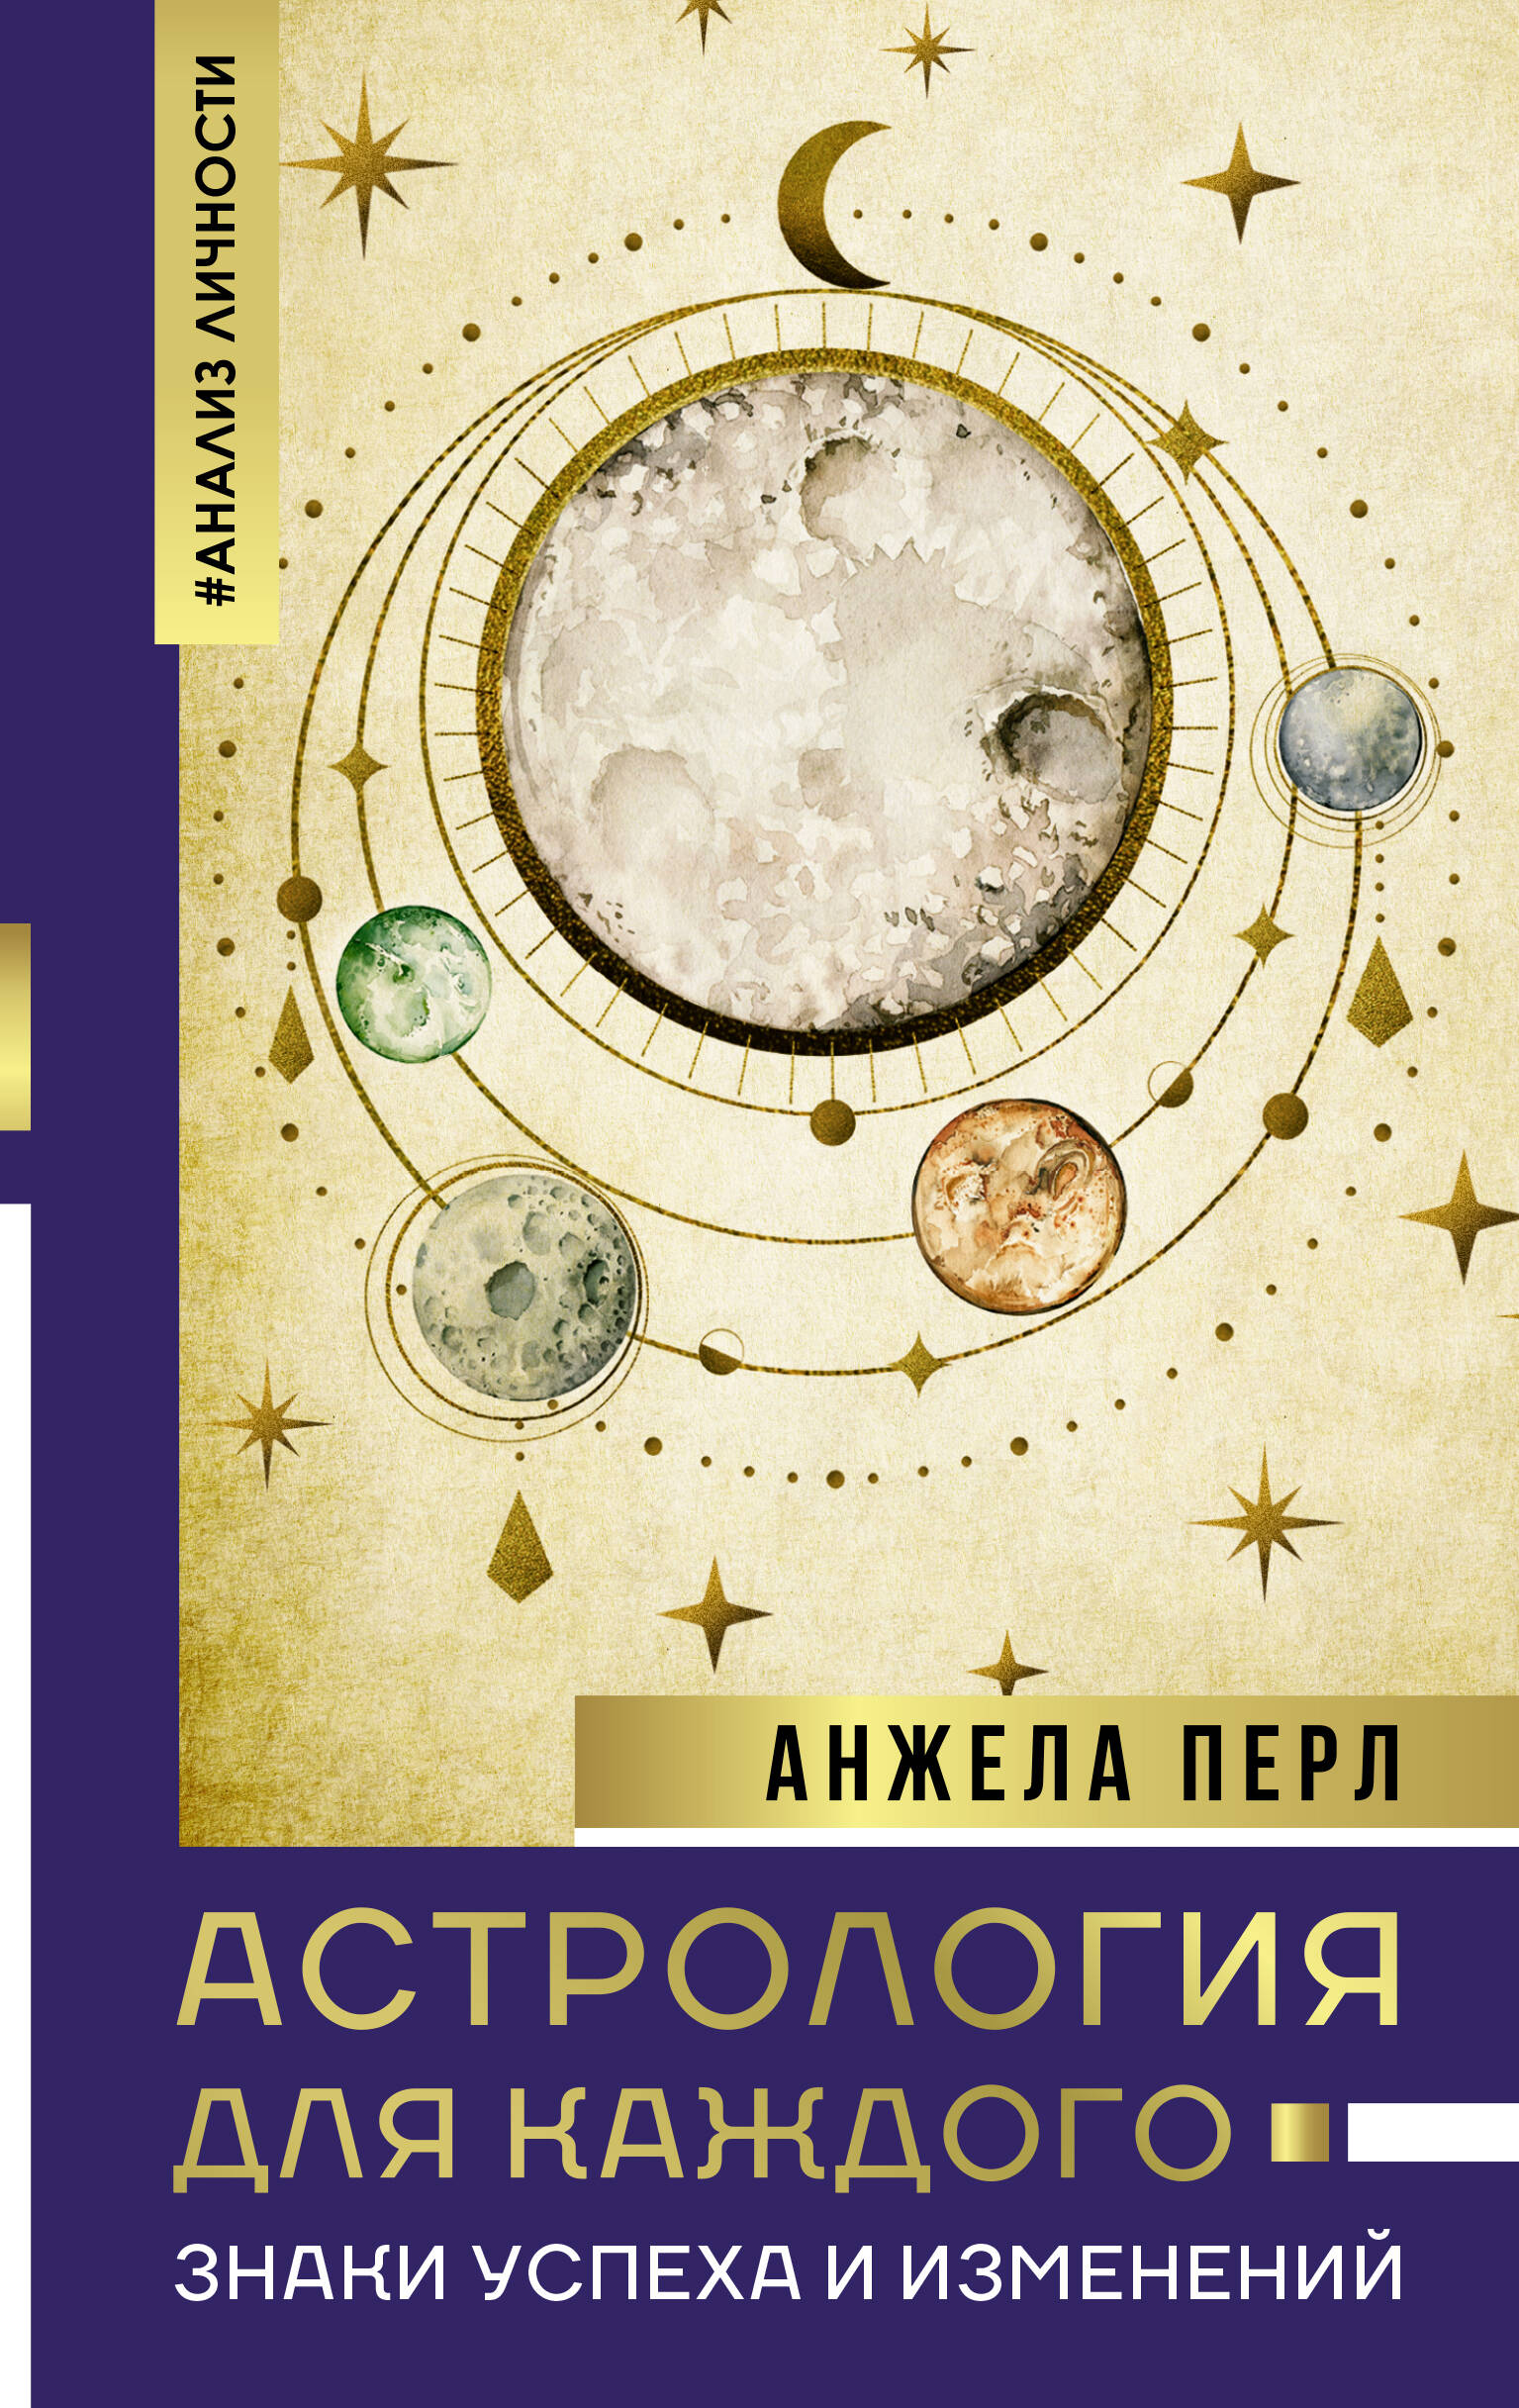 Перл Анжела - Астрология для каждого: знаки успеха и изменений